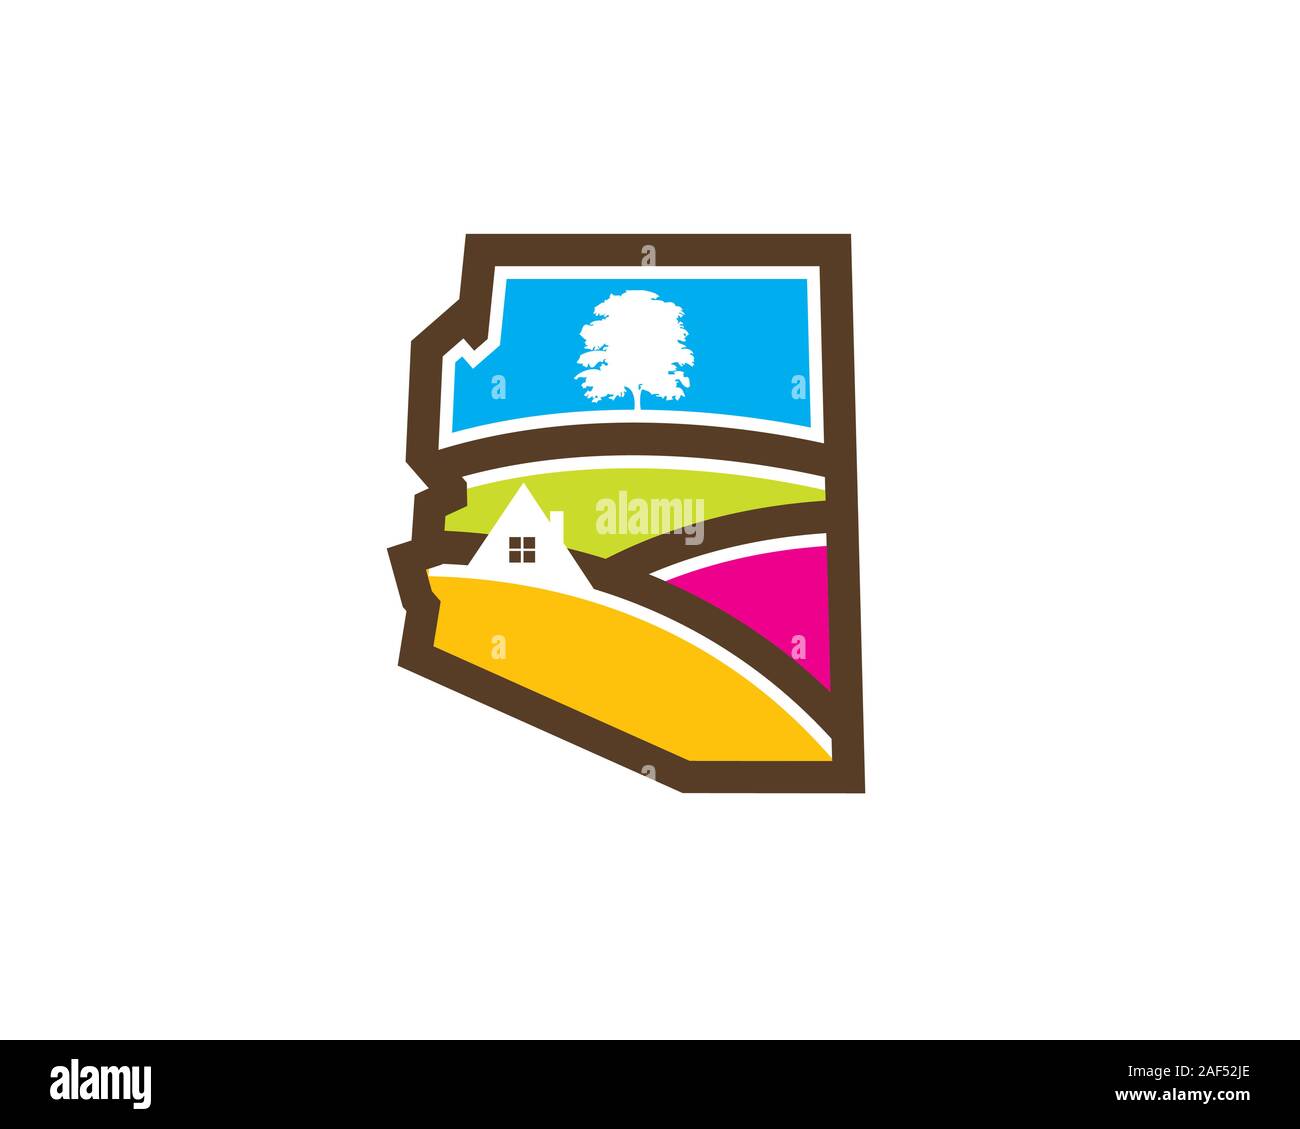 Mappa arizona con valle hill tree house paesaggio immobiliare di logo Illustrazione Vettoriale